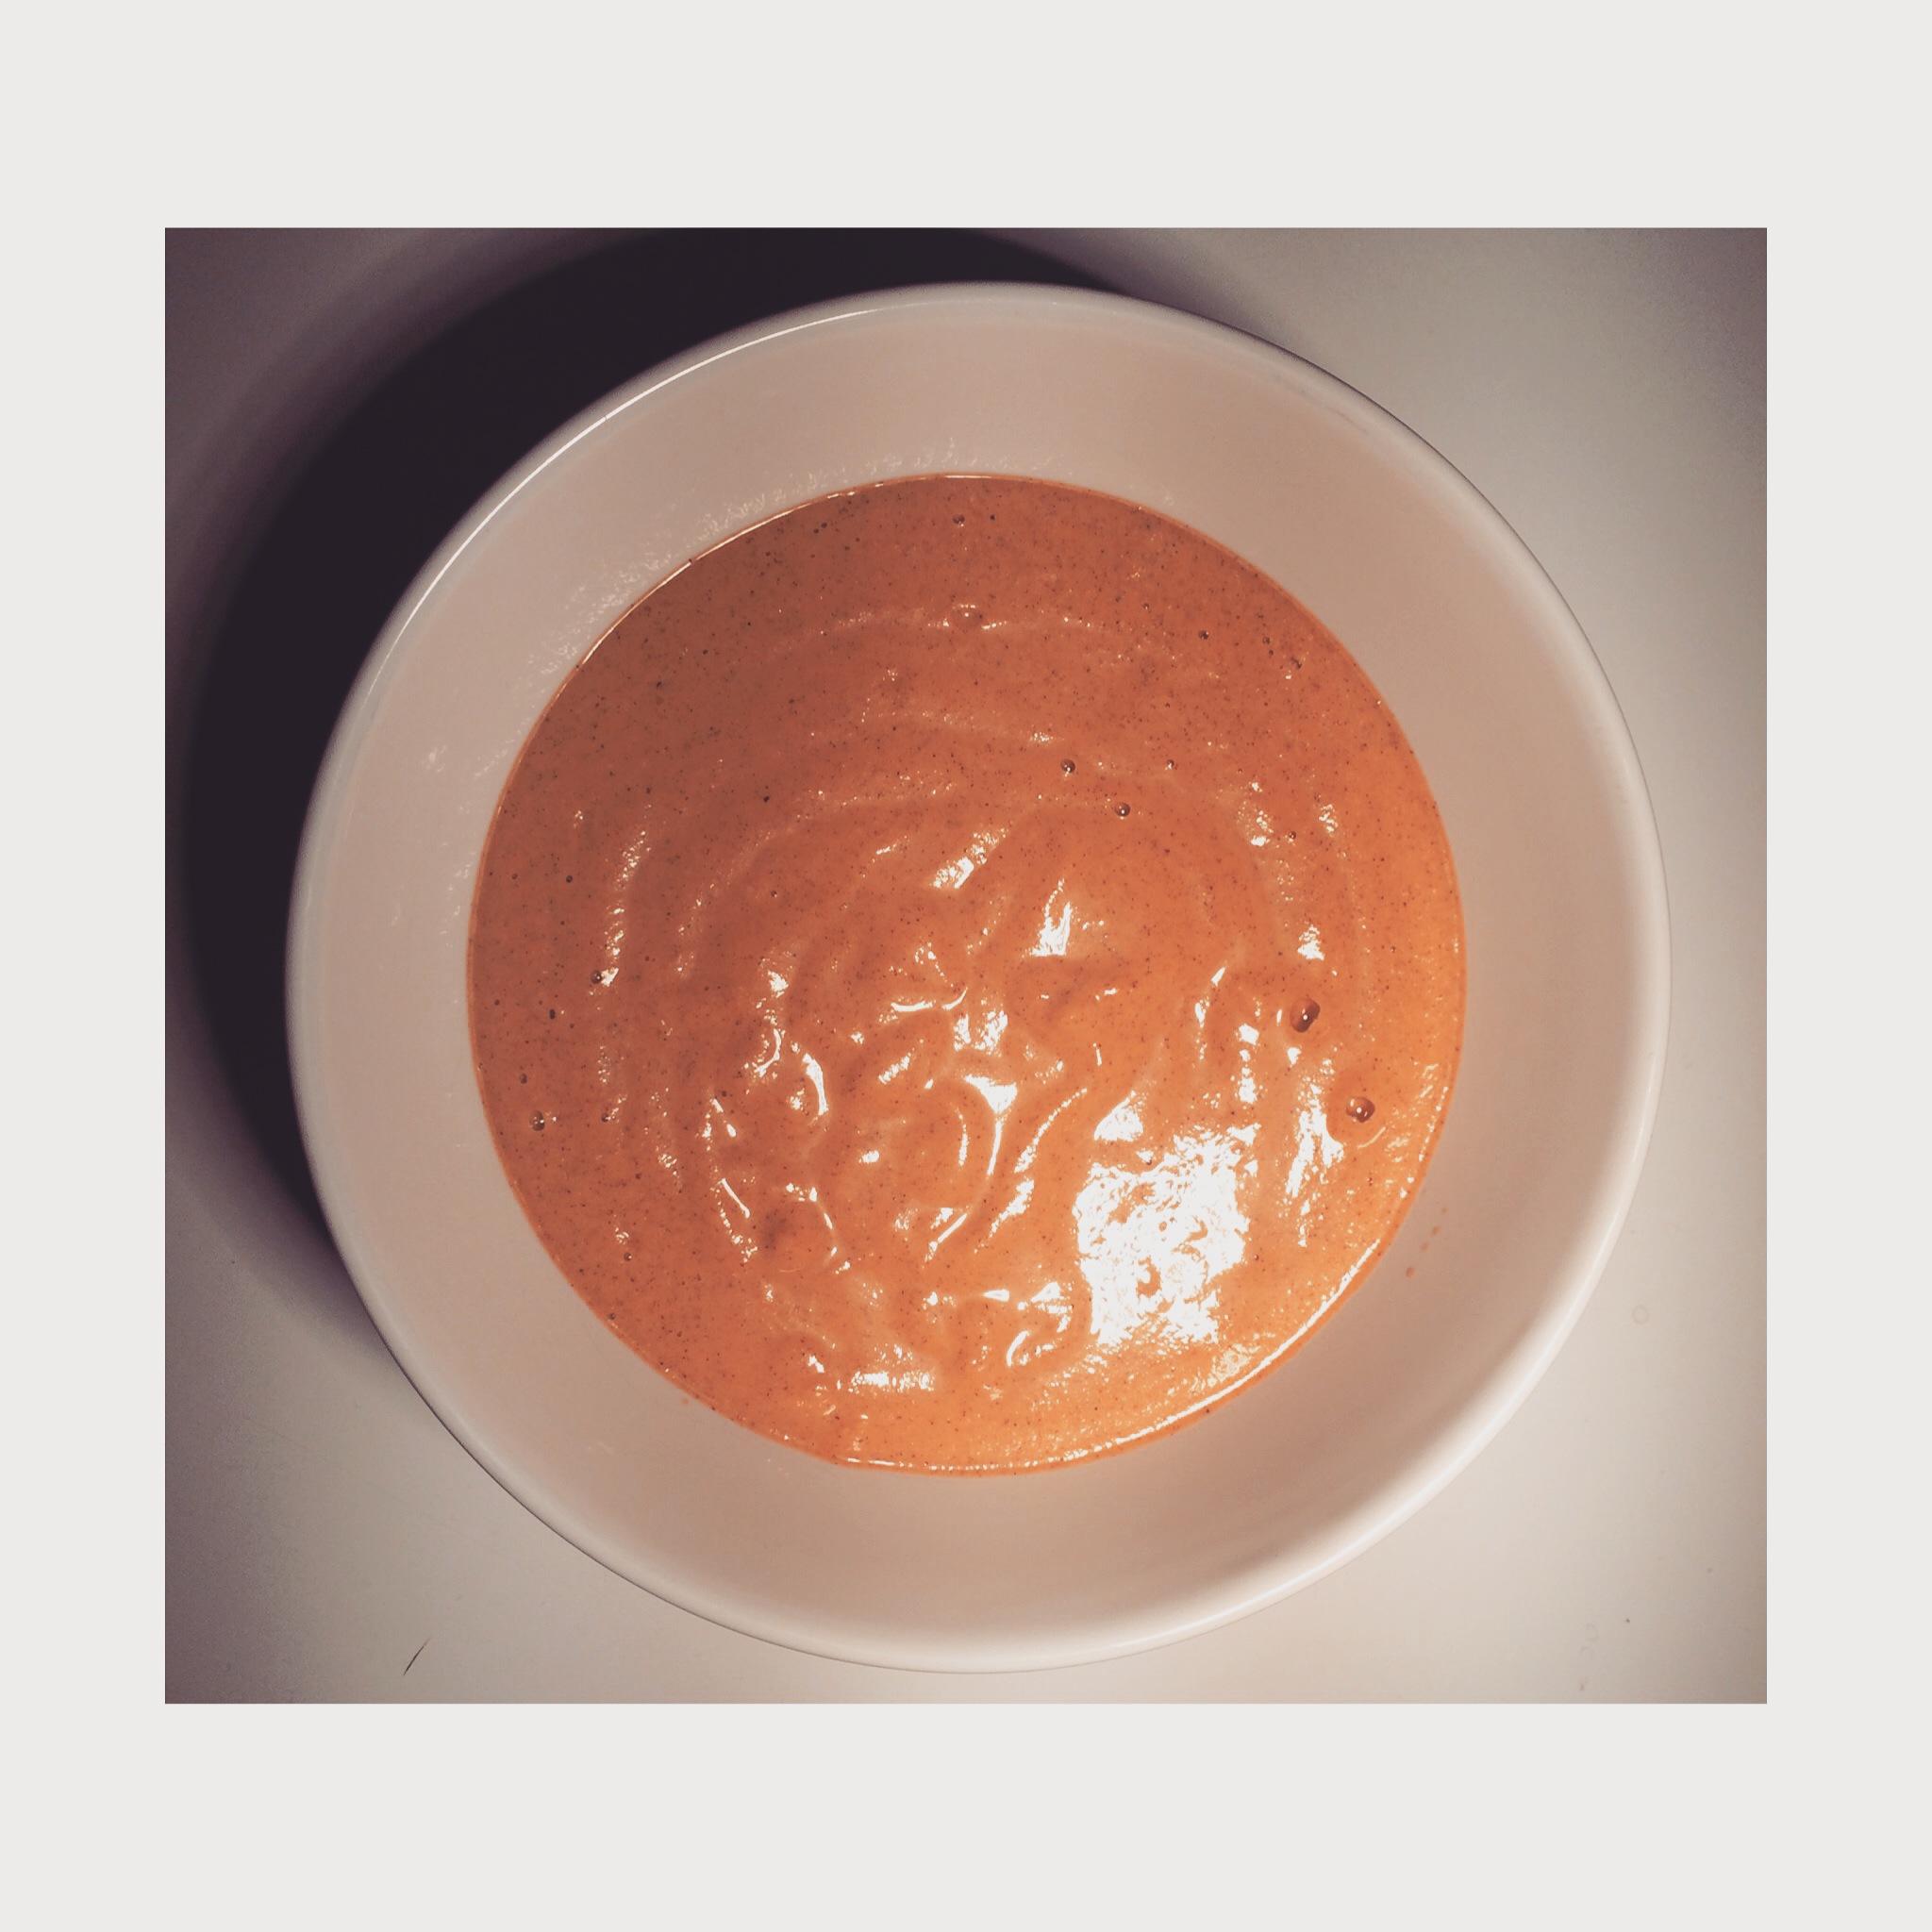 Carrot cake smoothie bowl